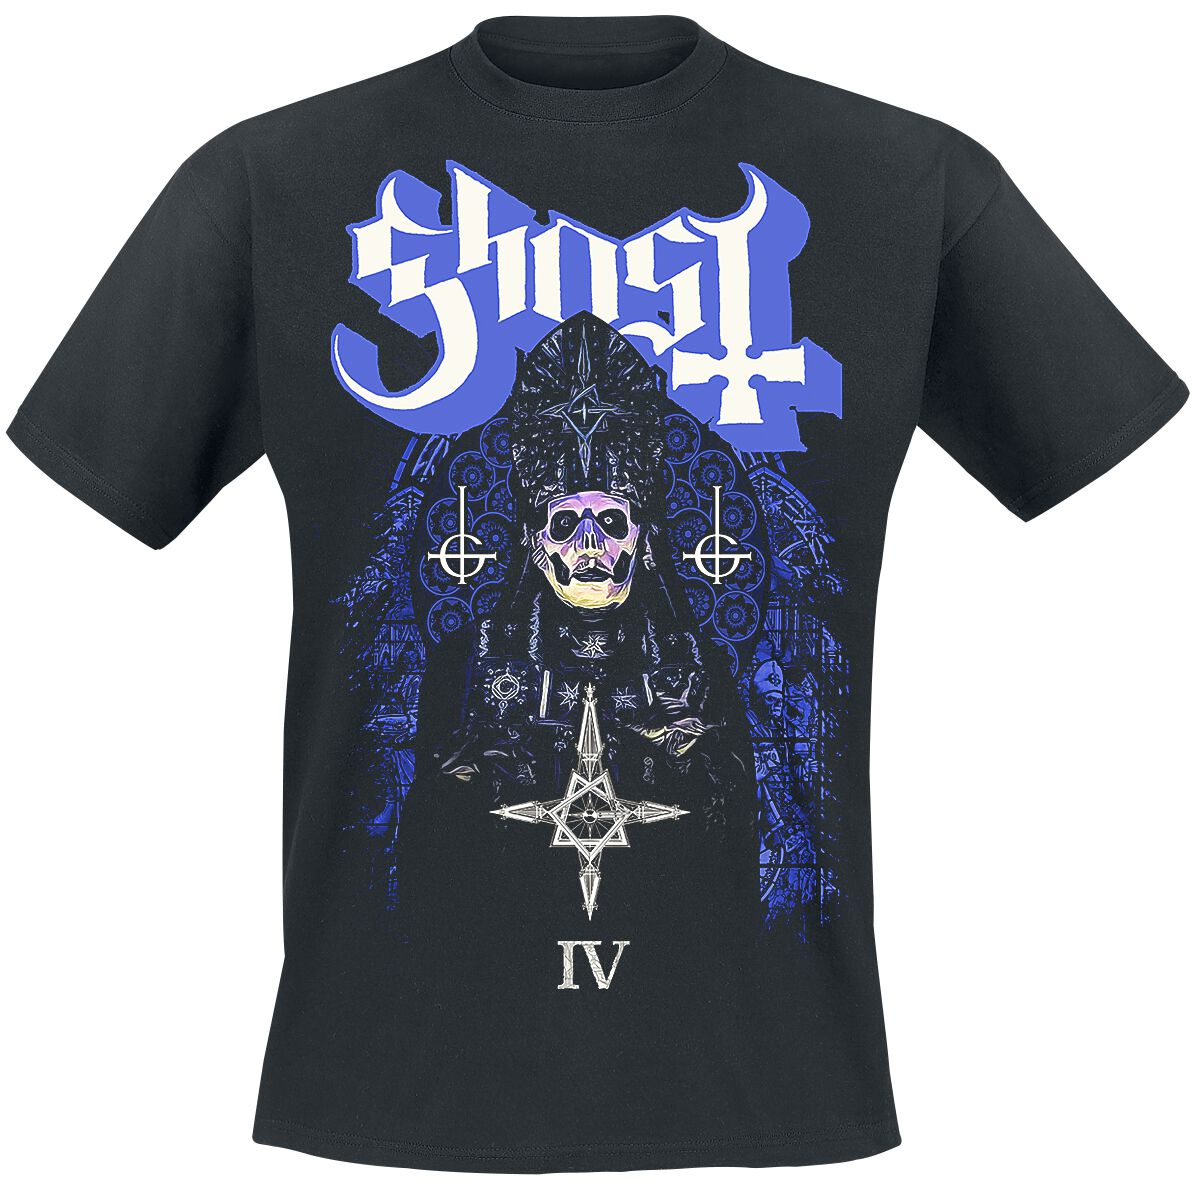 Ghost T-Shirt - Stained Glass IV - S bis 4XL - für Männer - Größe M - schwarz  - Lizenziertes Merchandise!